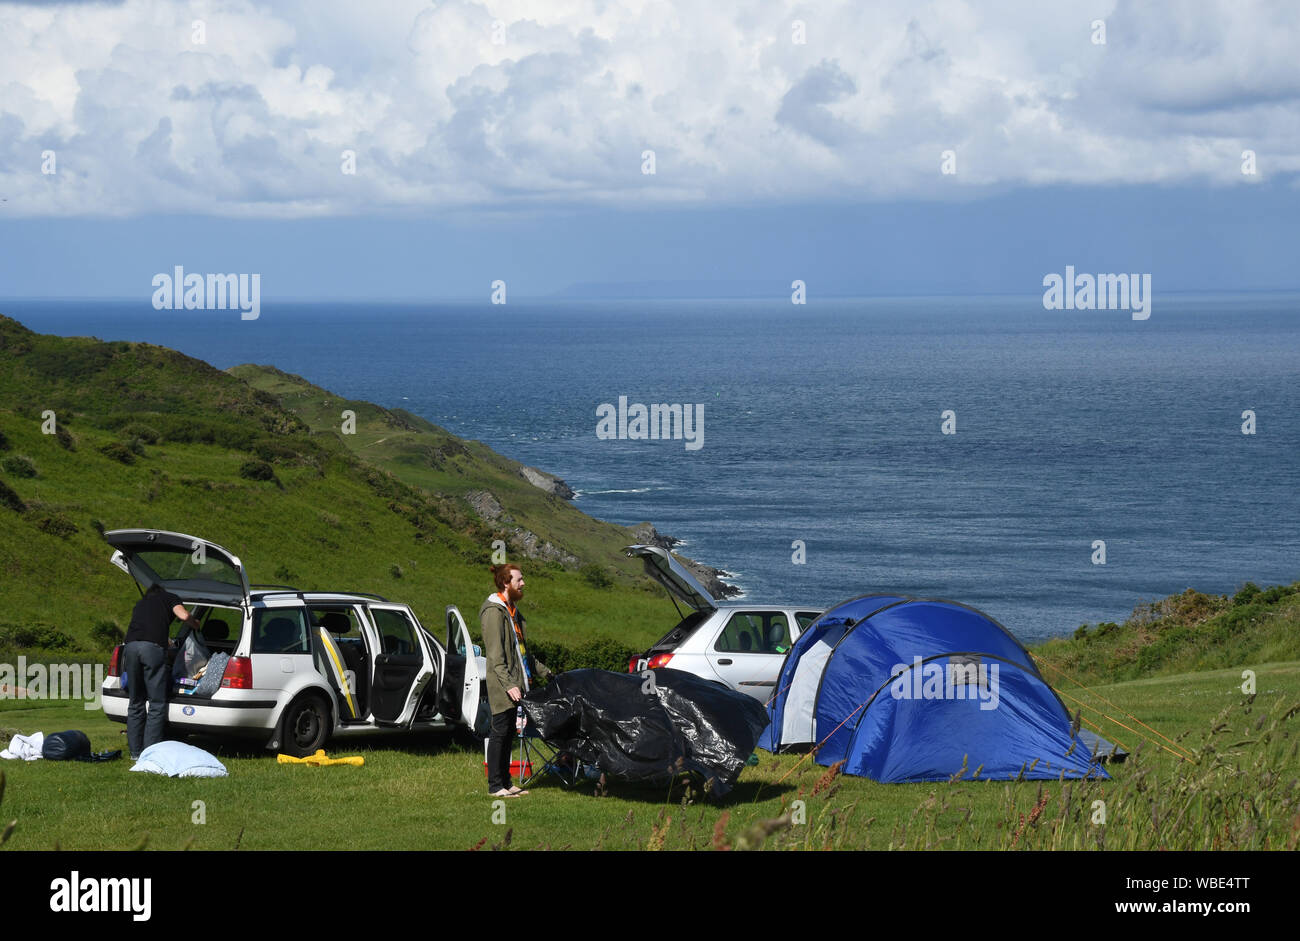 Zögern Camper bis Verpackung thier Zelte und Ausstattung auf einem schönen Campingplatz mit Blick auf das Meer in North Devon, England, Großbritannien Stockfoto